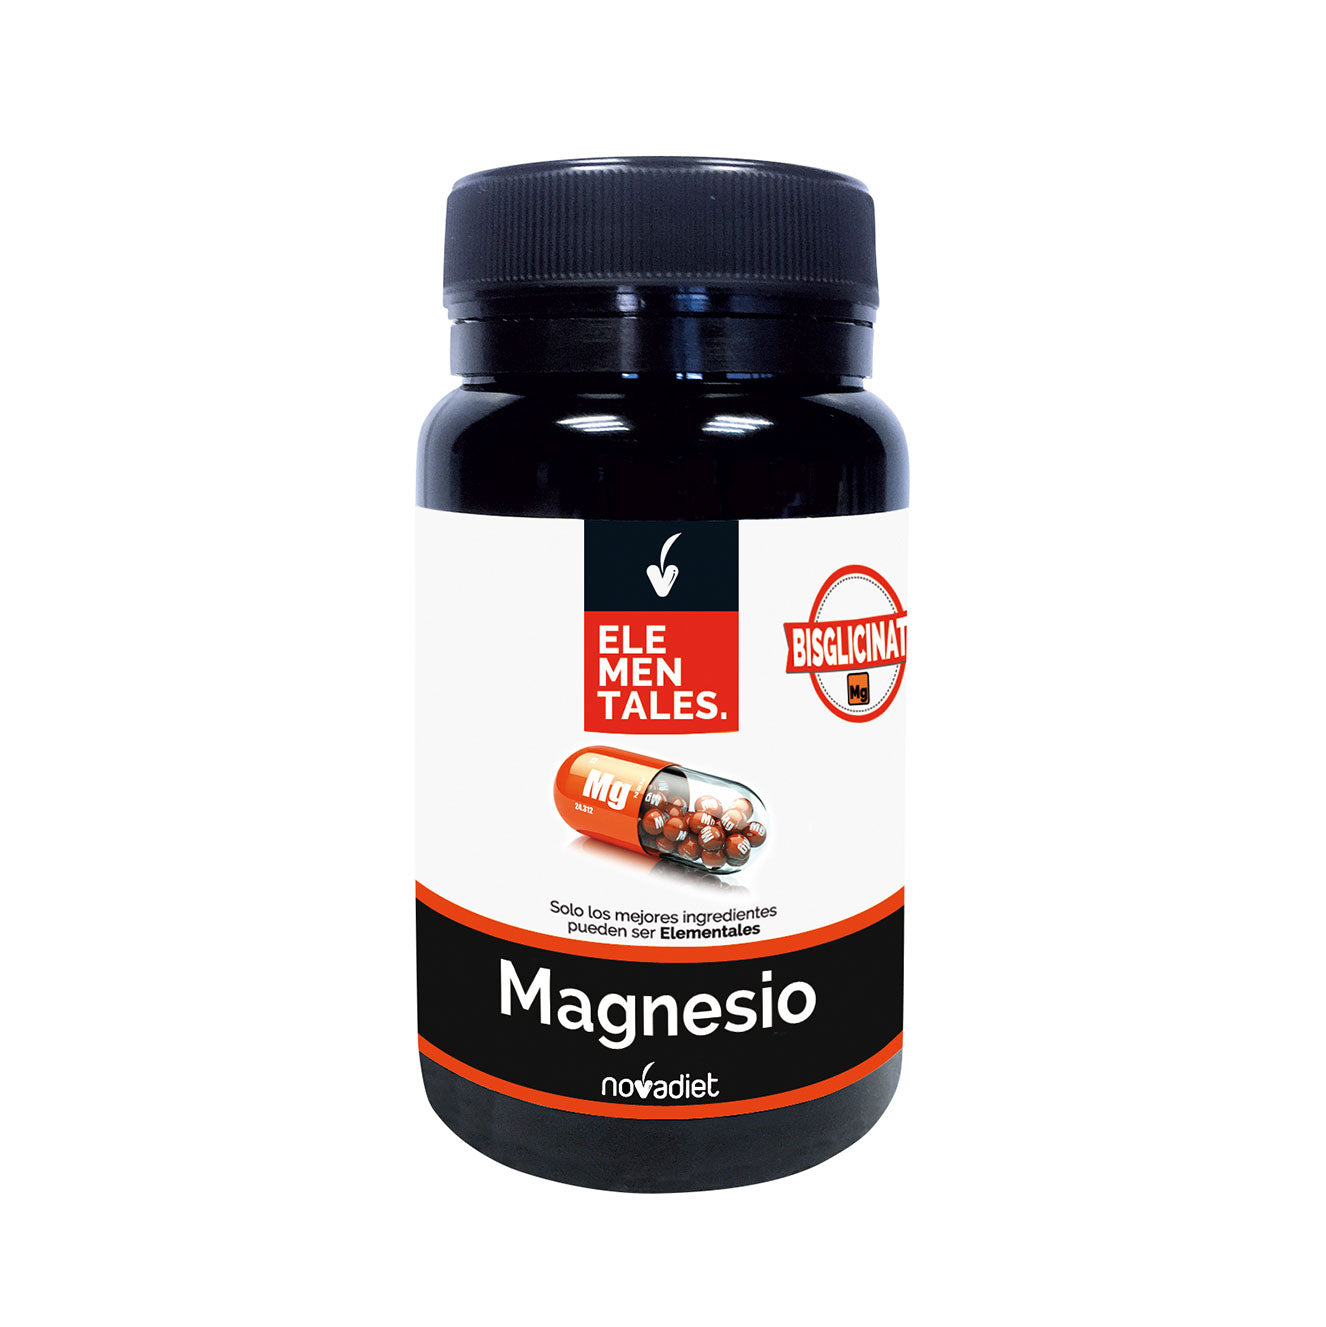 Magnesio